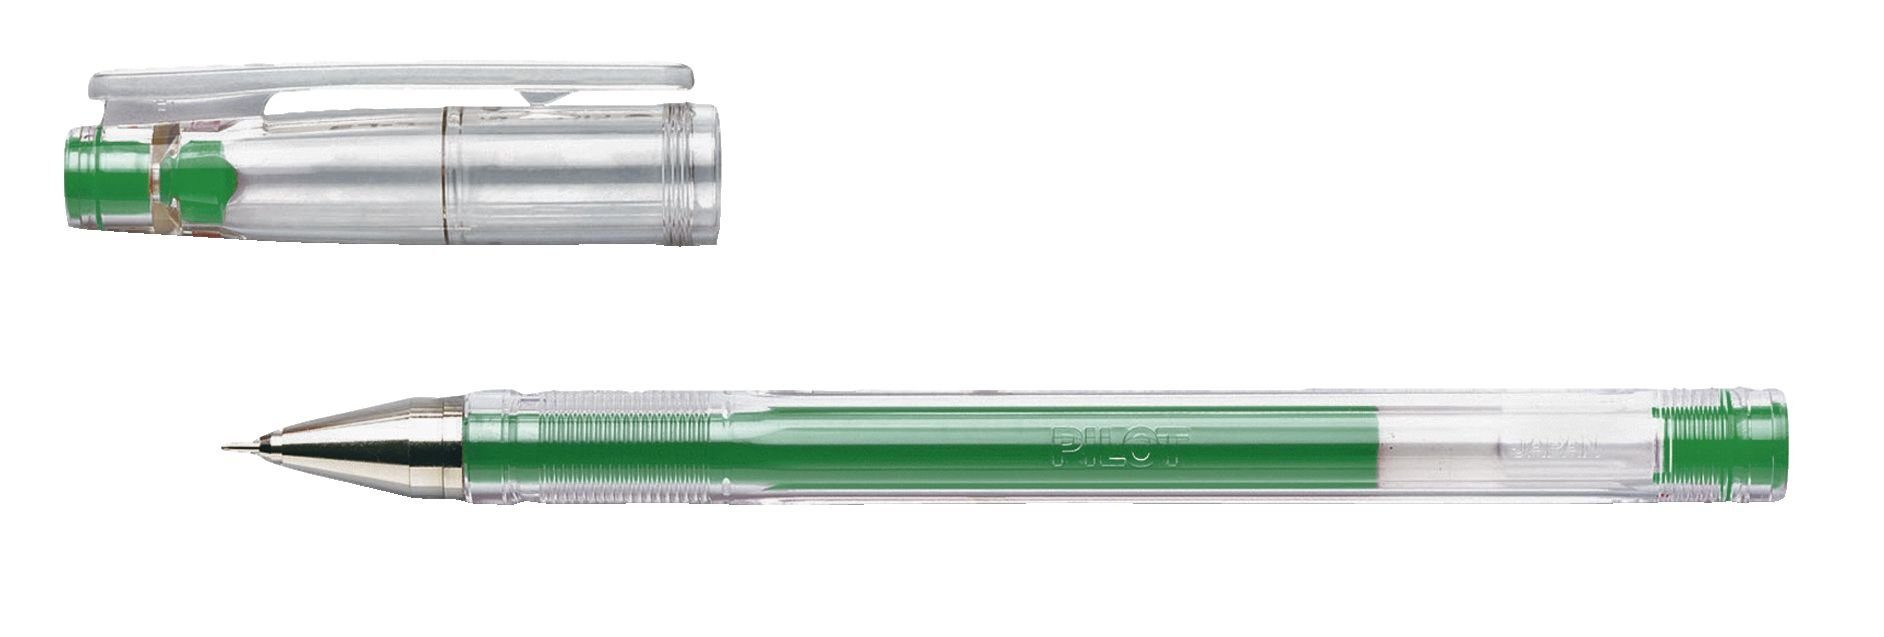 PILOT PILOT Gelschreiber G-TEC-C4, grün, Strichstärke: 0,2 mm Tintenpatrone